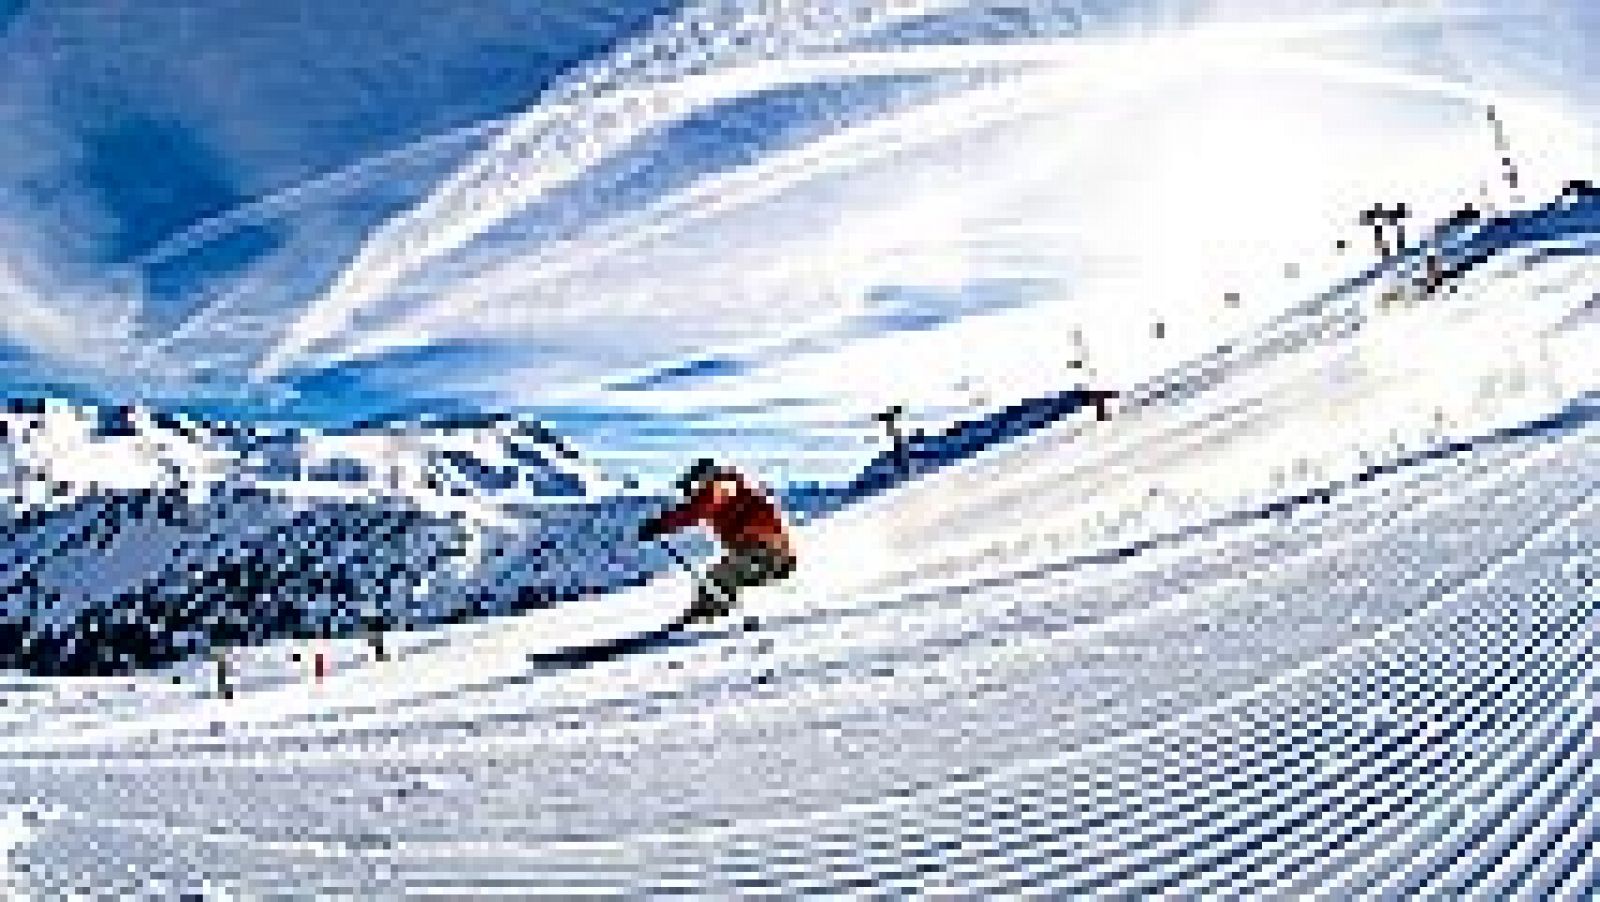 Aramón Cerler vuelve a ser, por segundo año consecutivo, la mejor estación de esquí de España. El galardón se entregó el sábado en la ceremonia de los World Ski Awards.